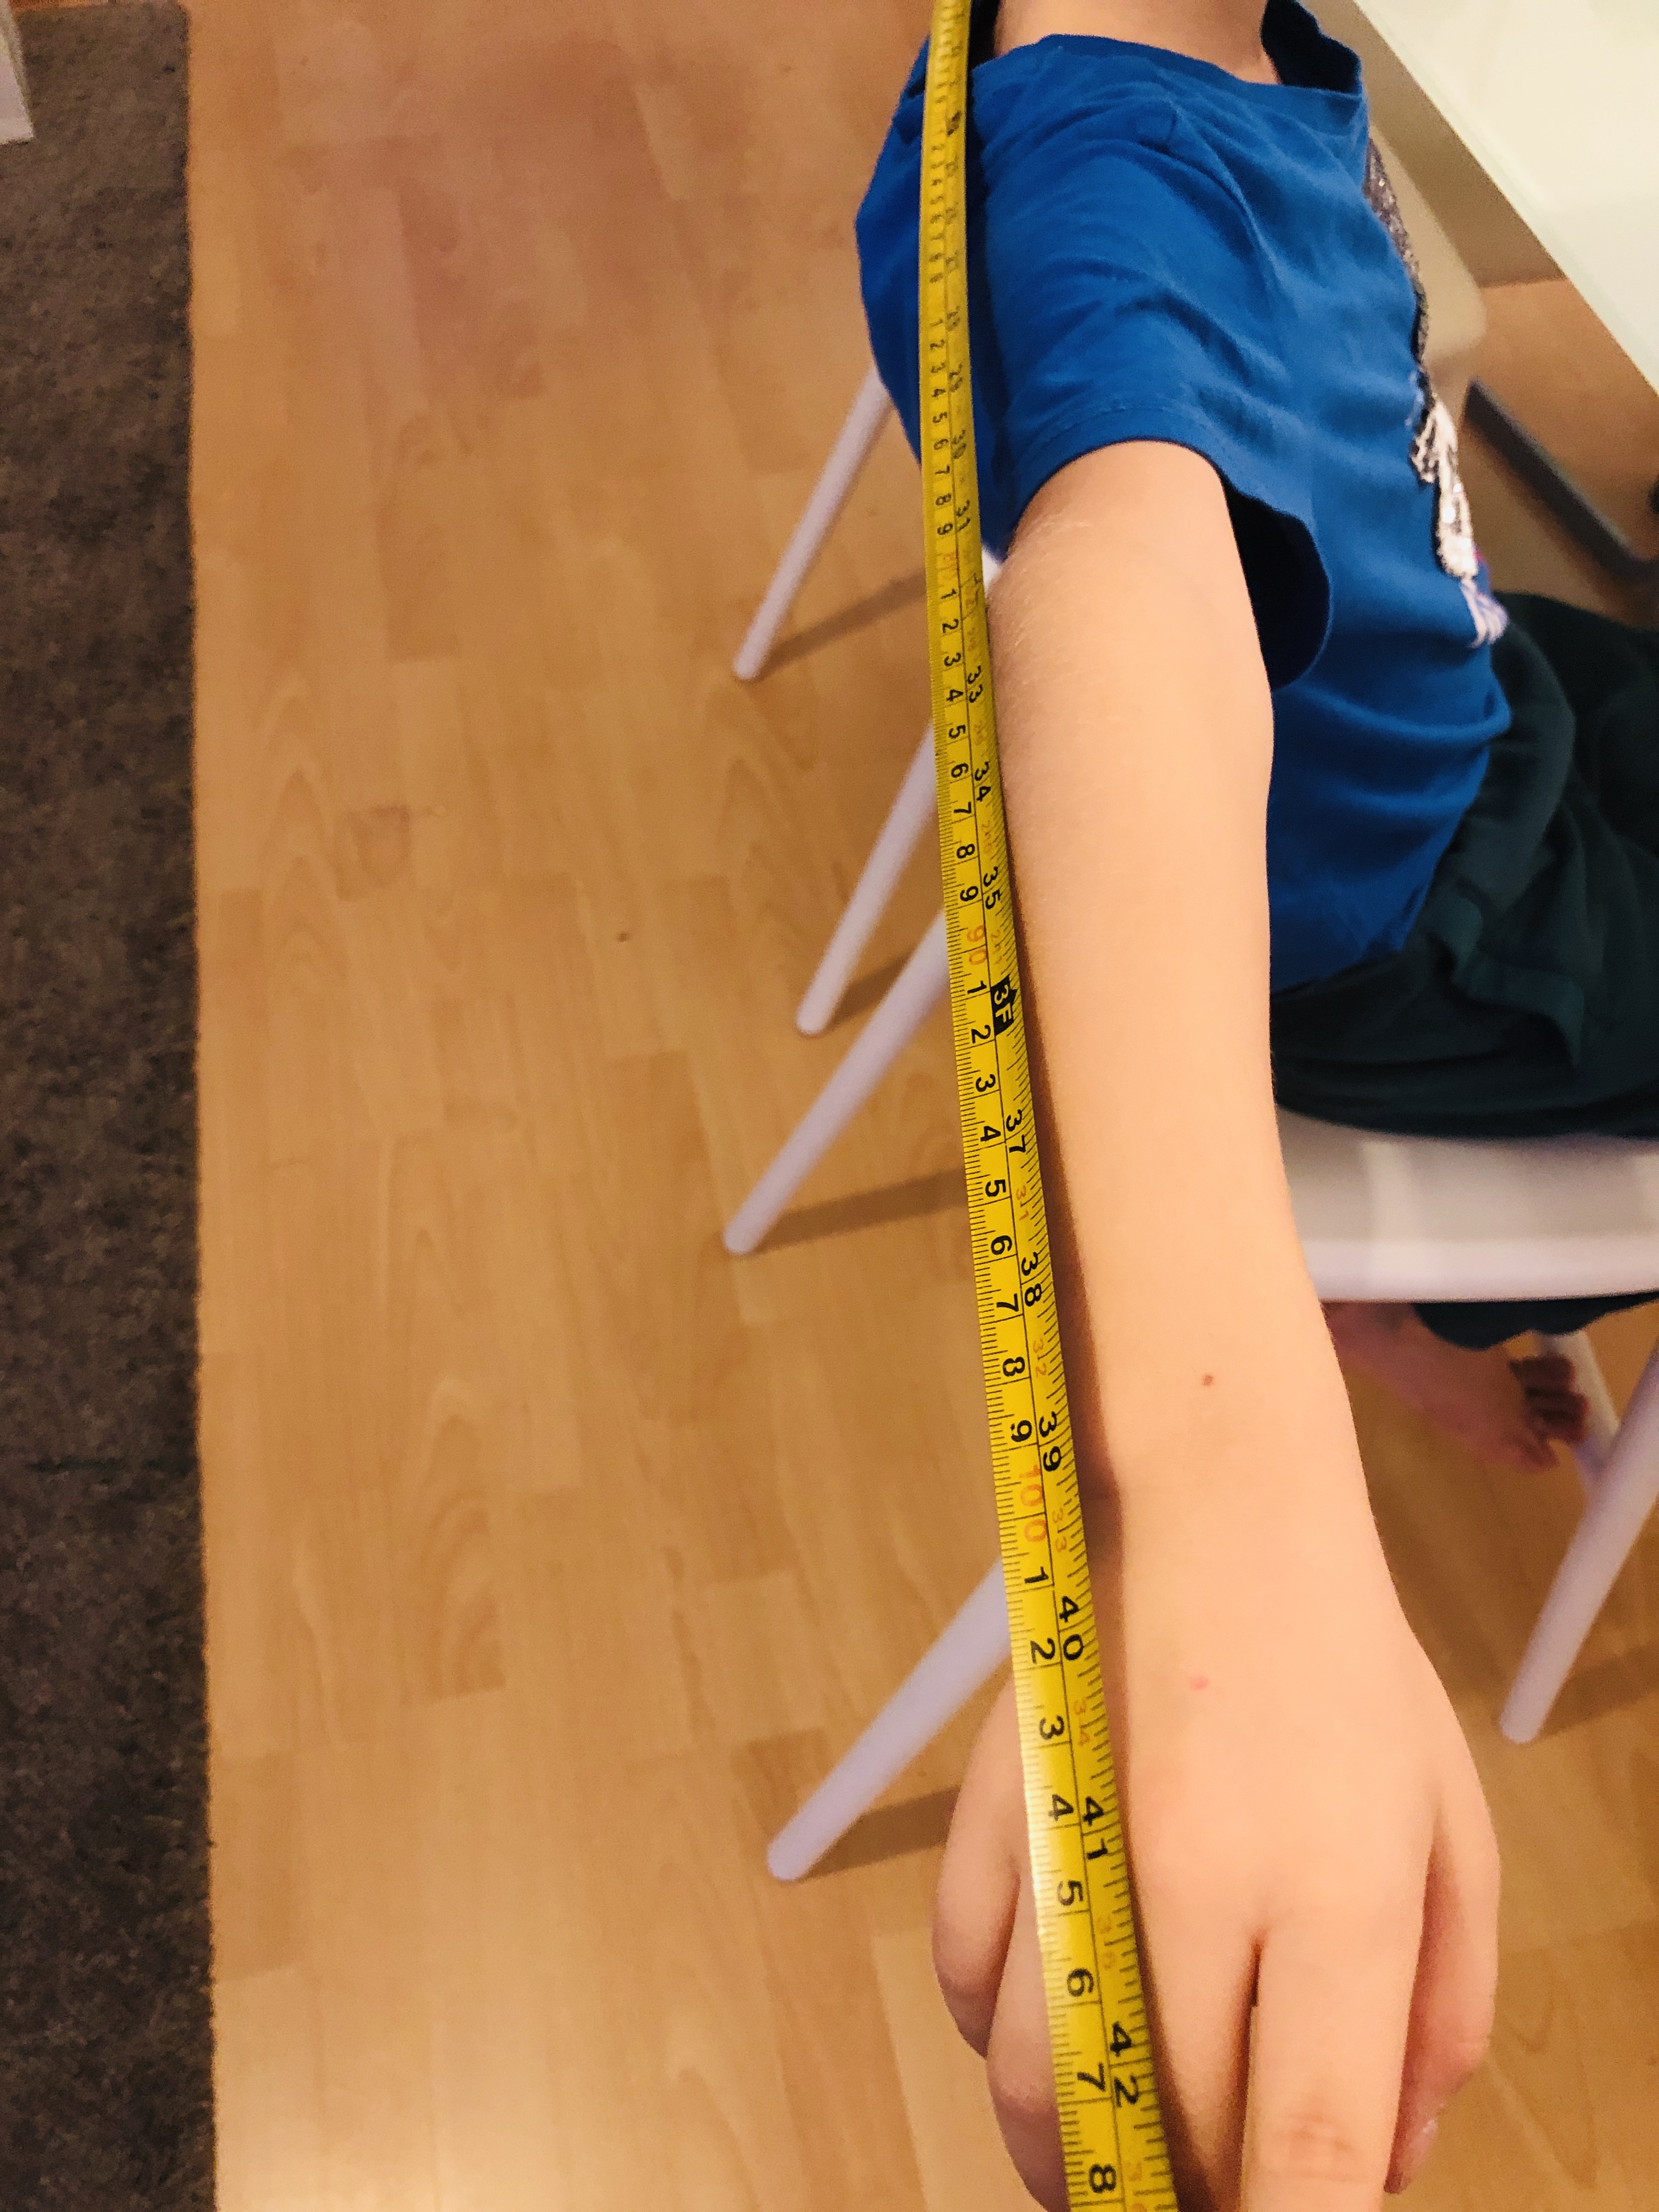 measuring arms for the hug